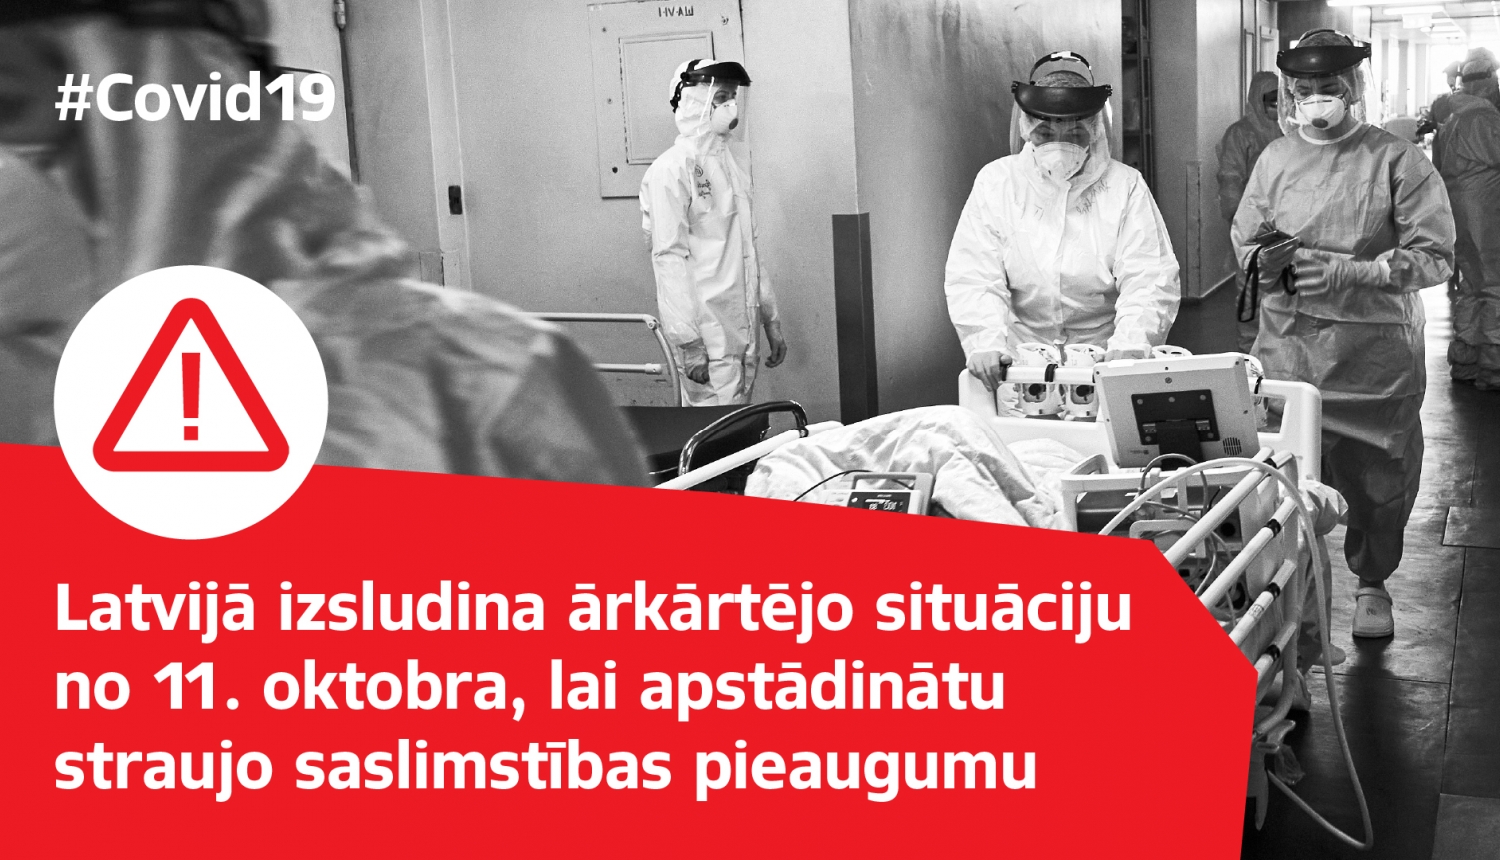 Melnbalts attēls ar mediķiem,kas ved Covid-19 pacientu, uzraksts "Latvijā izsludina ārkārtējo situāciju no 11.oktobra, lai apstādinātu straujo saslimstības pieaugumu"